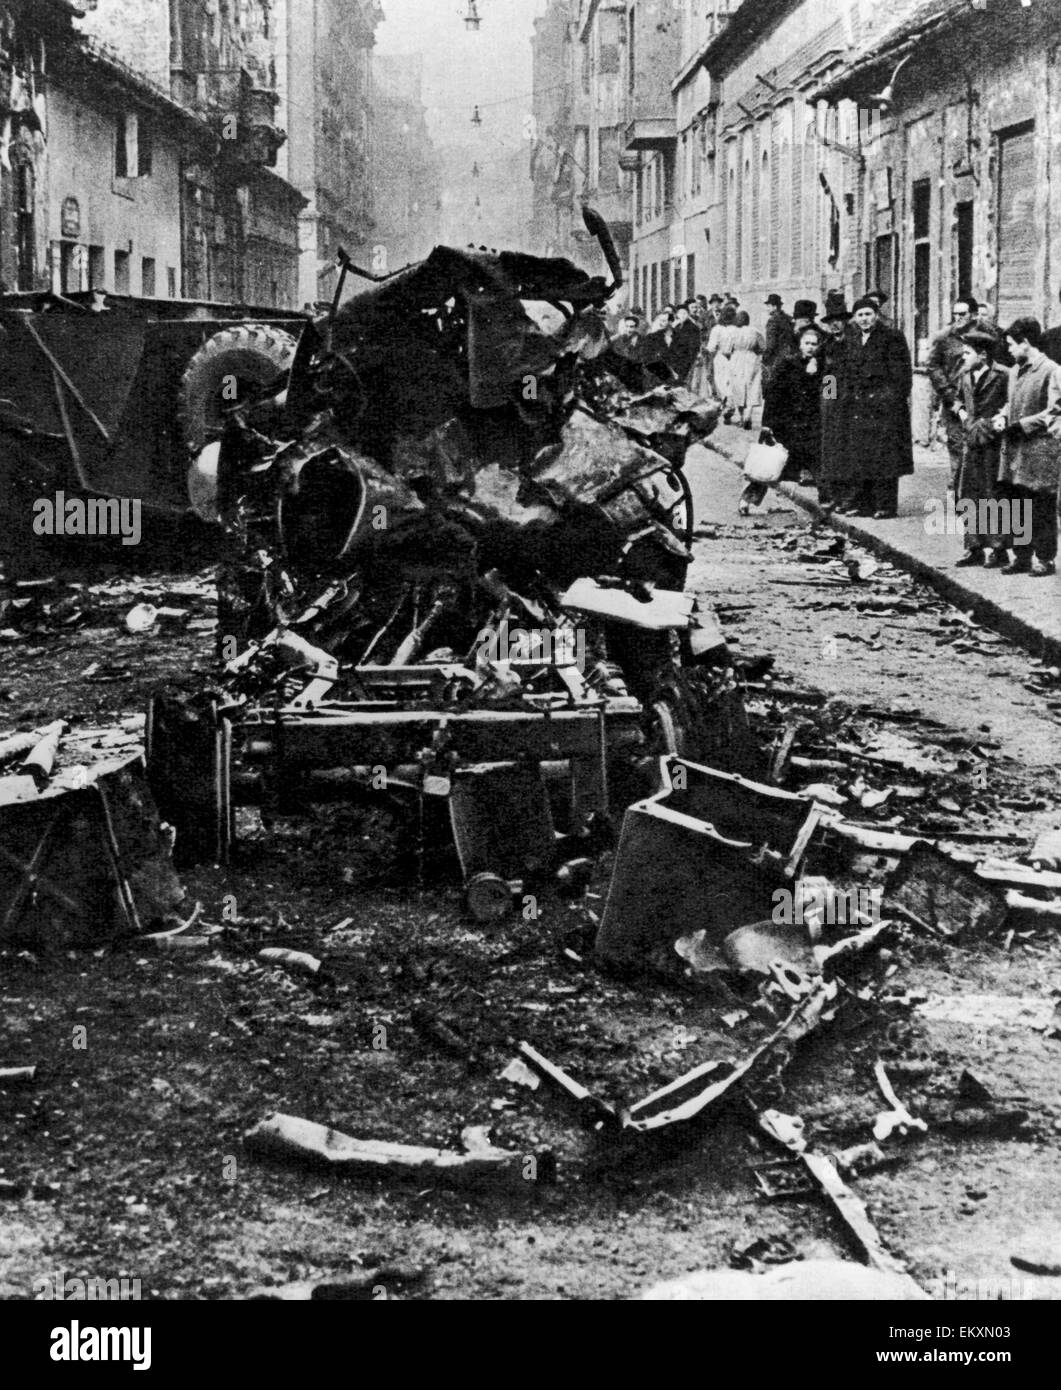 Ungarischen Aufstand 1956. Schaulustige inspizieren den Wirren Trümmern eines unbekannten Fahrzeugs nach schweren Straßenkämpfen in der Innenstadt von Budapest am 4. November 1956 zwischen ungarischen Freiheitskämpfer und der sowjetischen Armee. Stockfoto